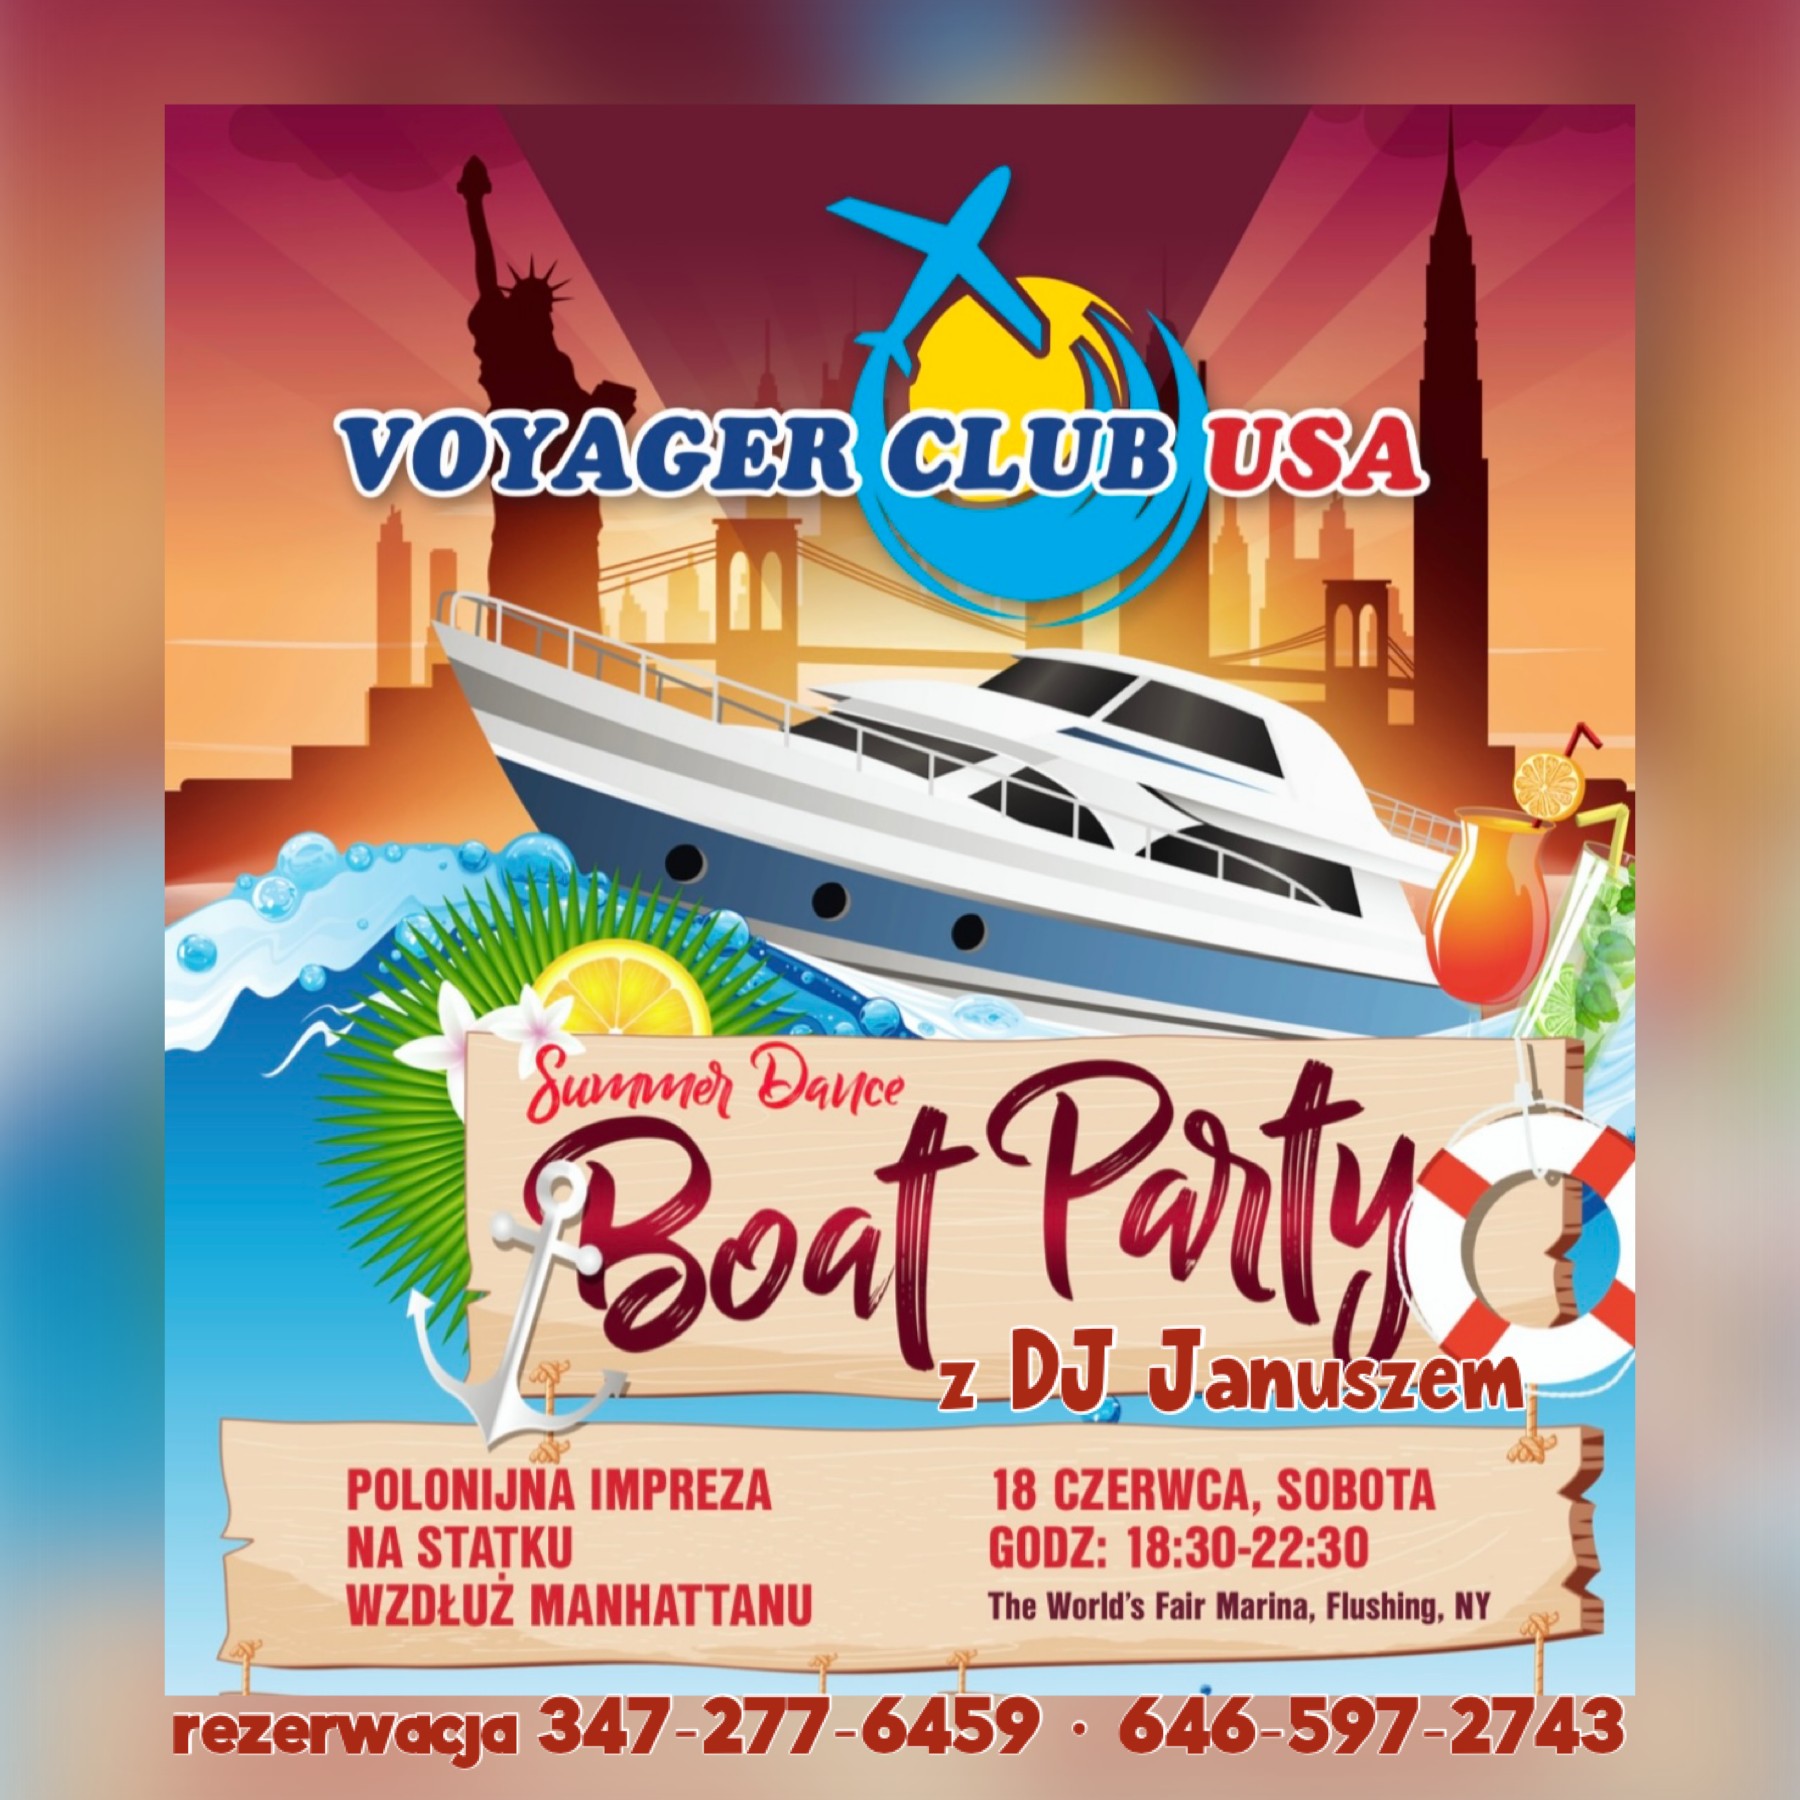 Polonijna impreza na statku wzdłuż Manhattanu - Summer Dance Boat Party in New York